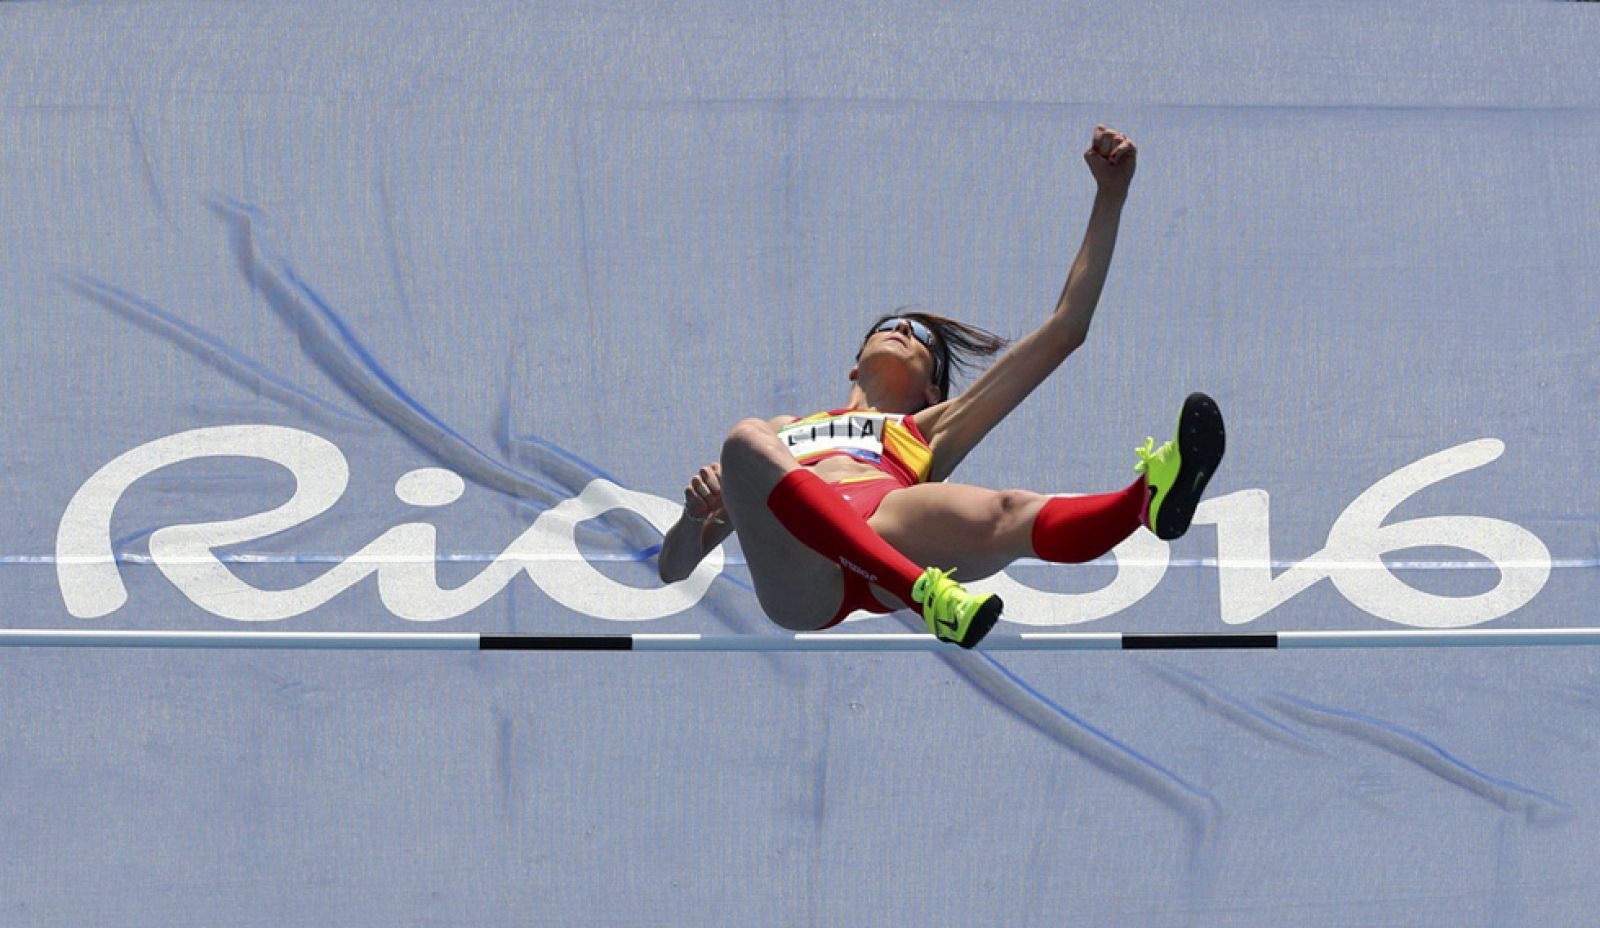 Río 2016 - Atletismo | Ruth Beitia salta 1,94 y se clasifica para la final de altura